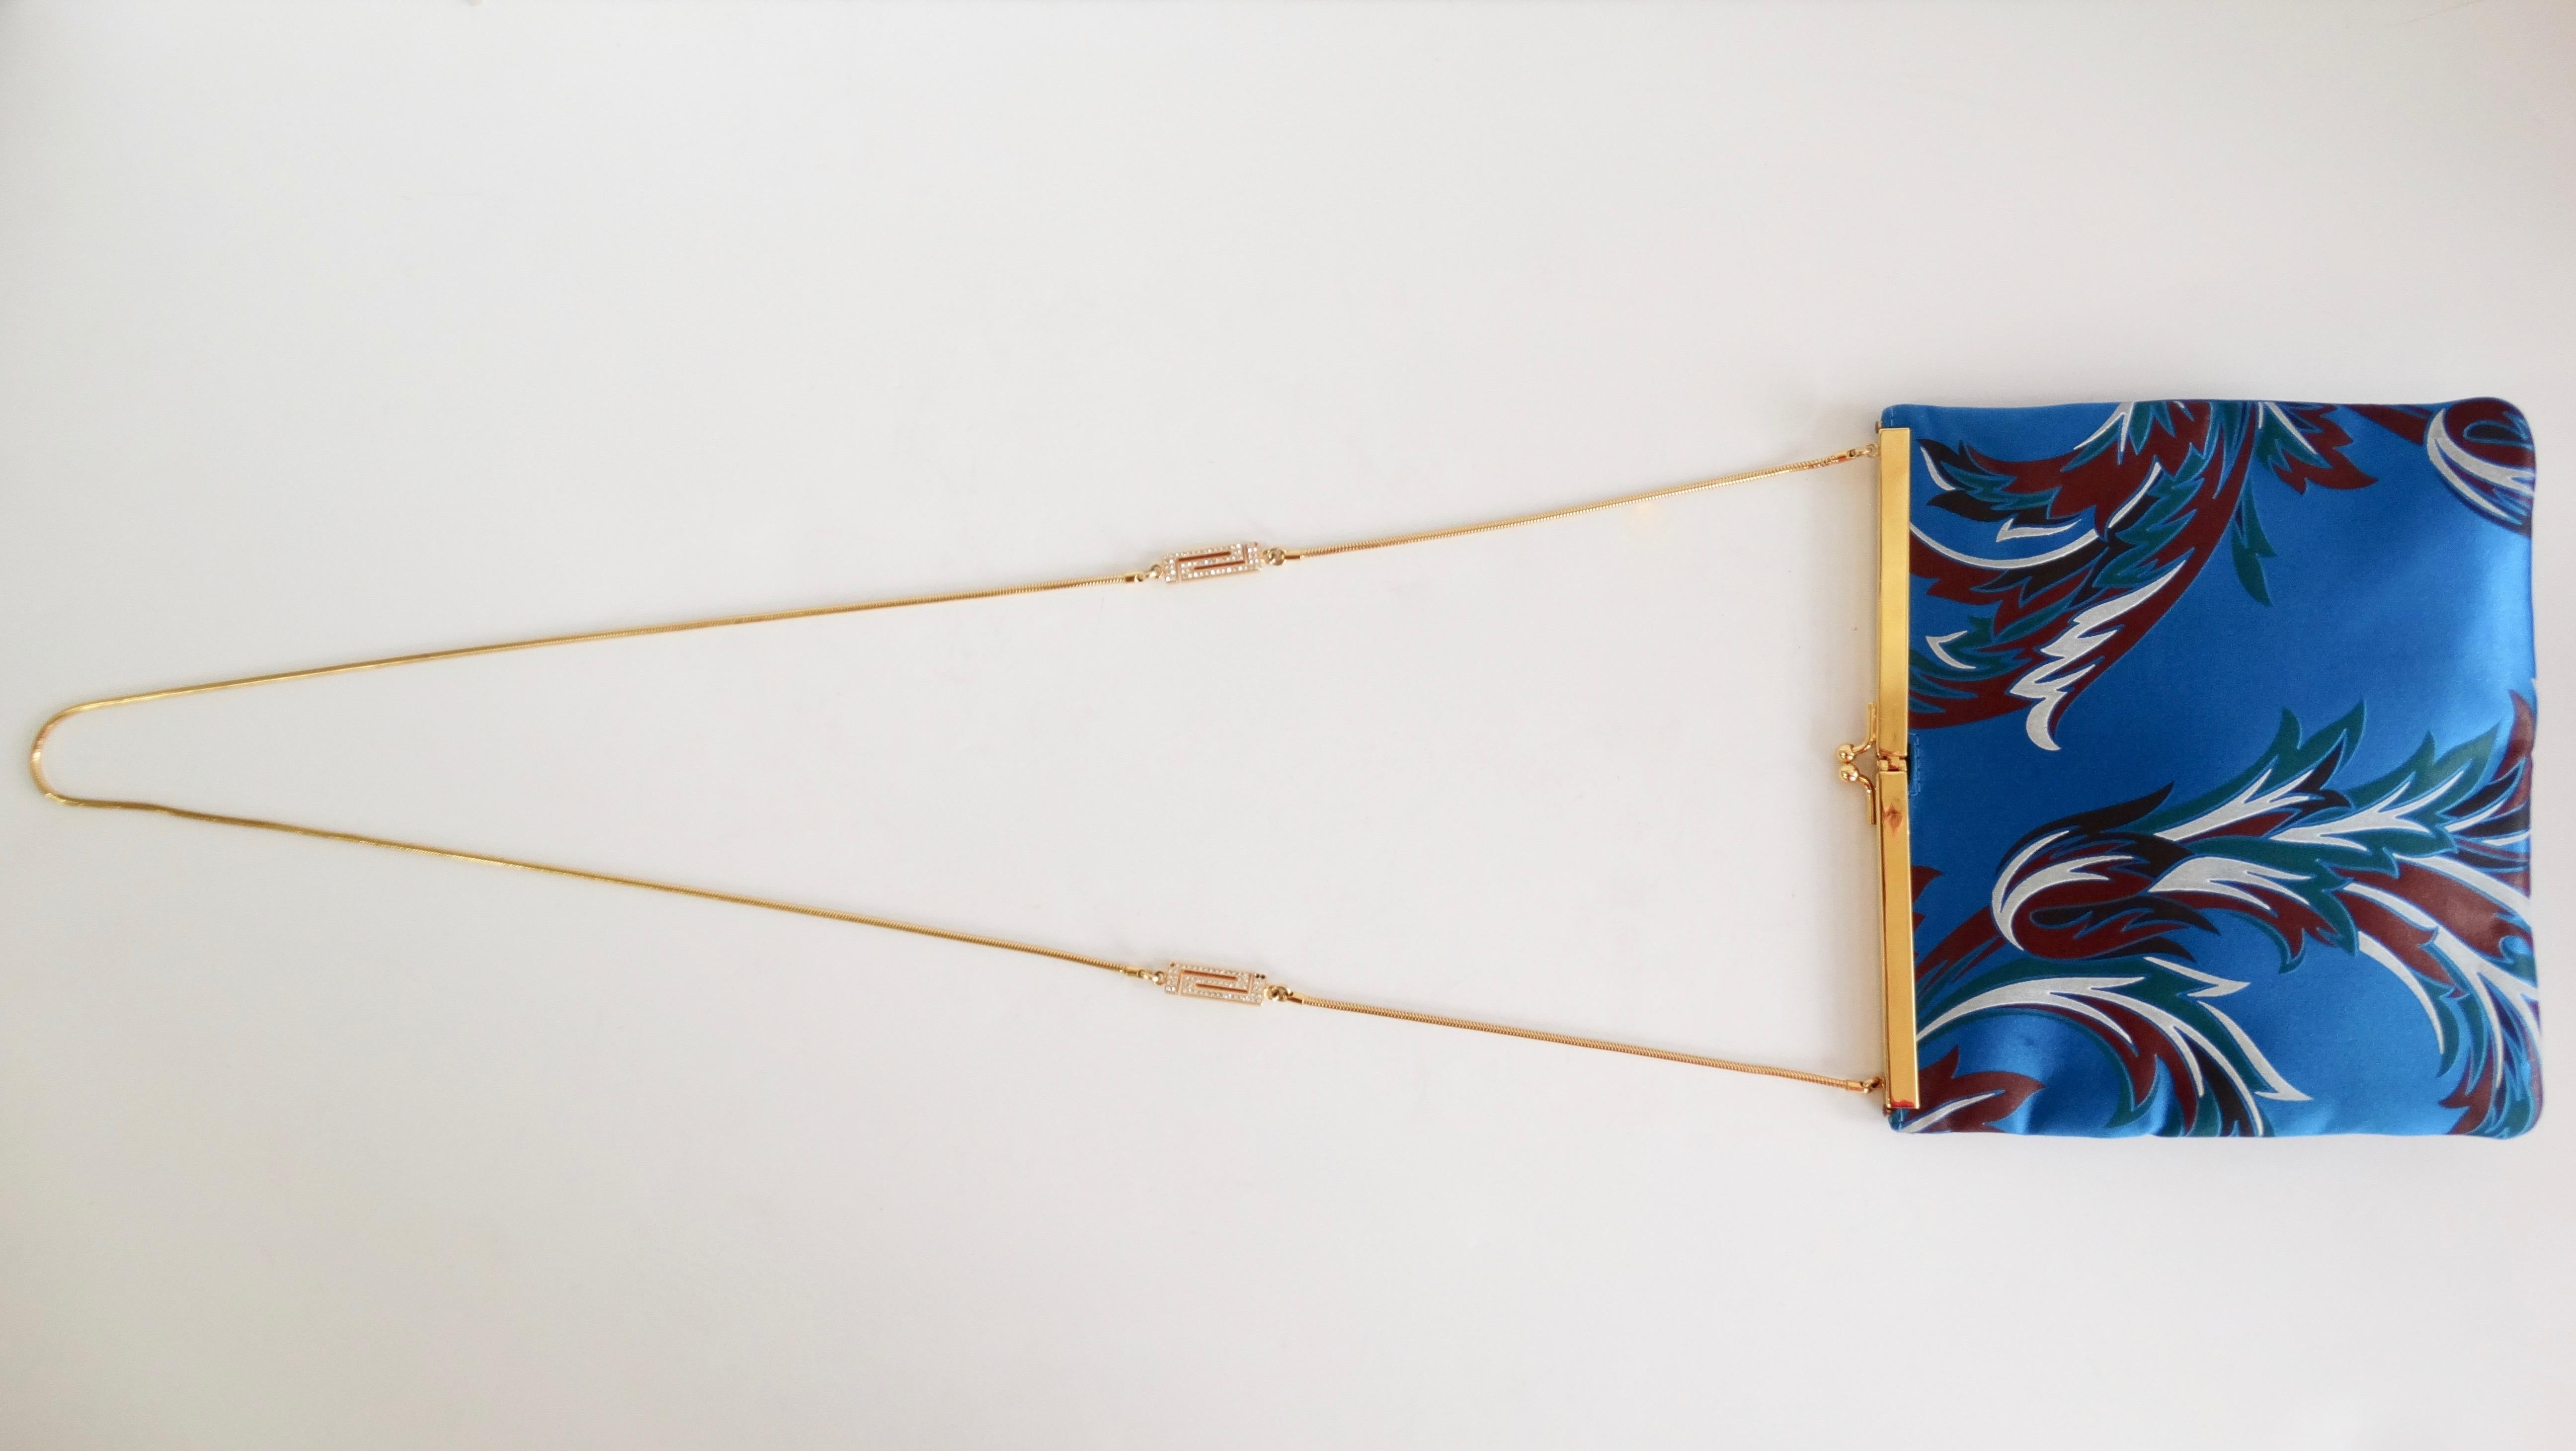 Élevez votre look avec ce magnifique sac à bandoulière Versace ! Circa 1990, ce sac est fait d'un magnifique satin bleu et présente un motif baroque multicolore. Il est doté de ferrures dorées, d'un fermoir à baiser et d'une lanière en chaîne ornée